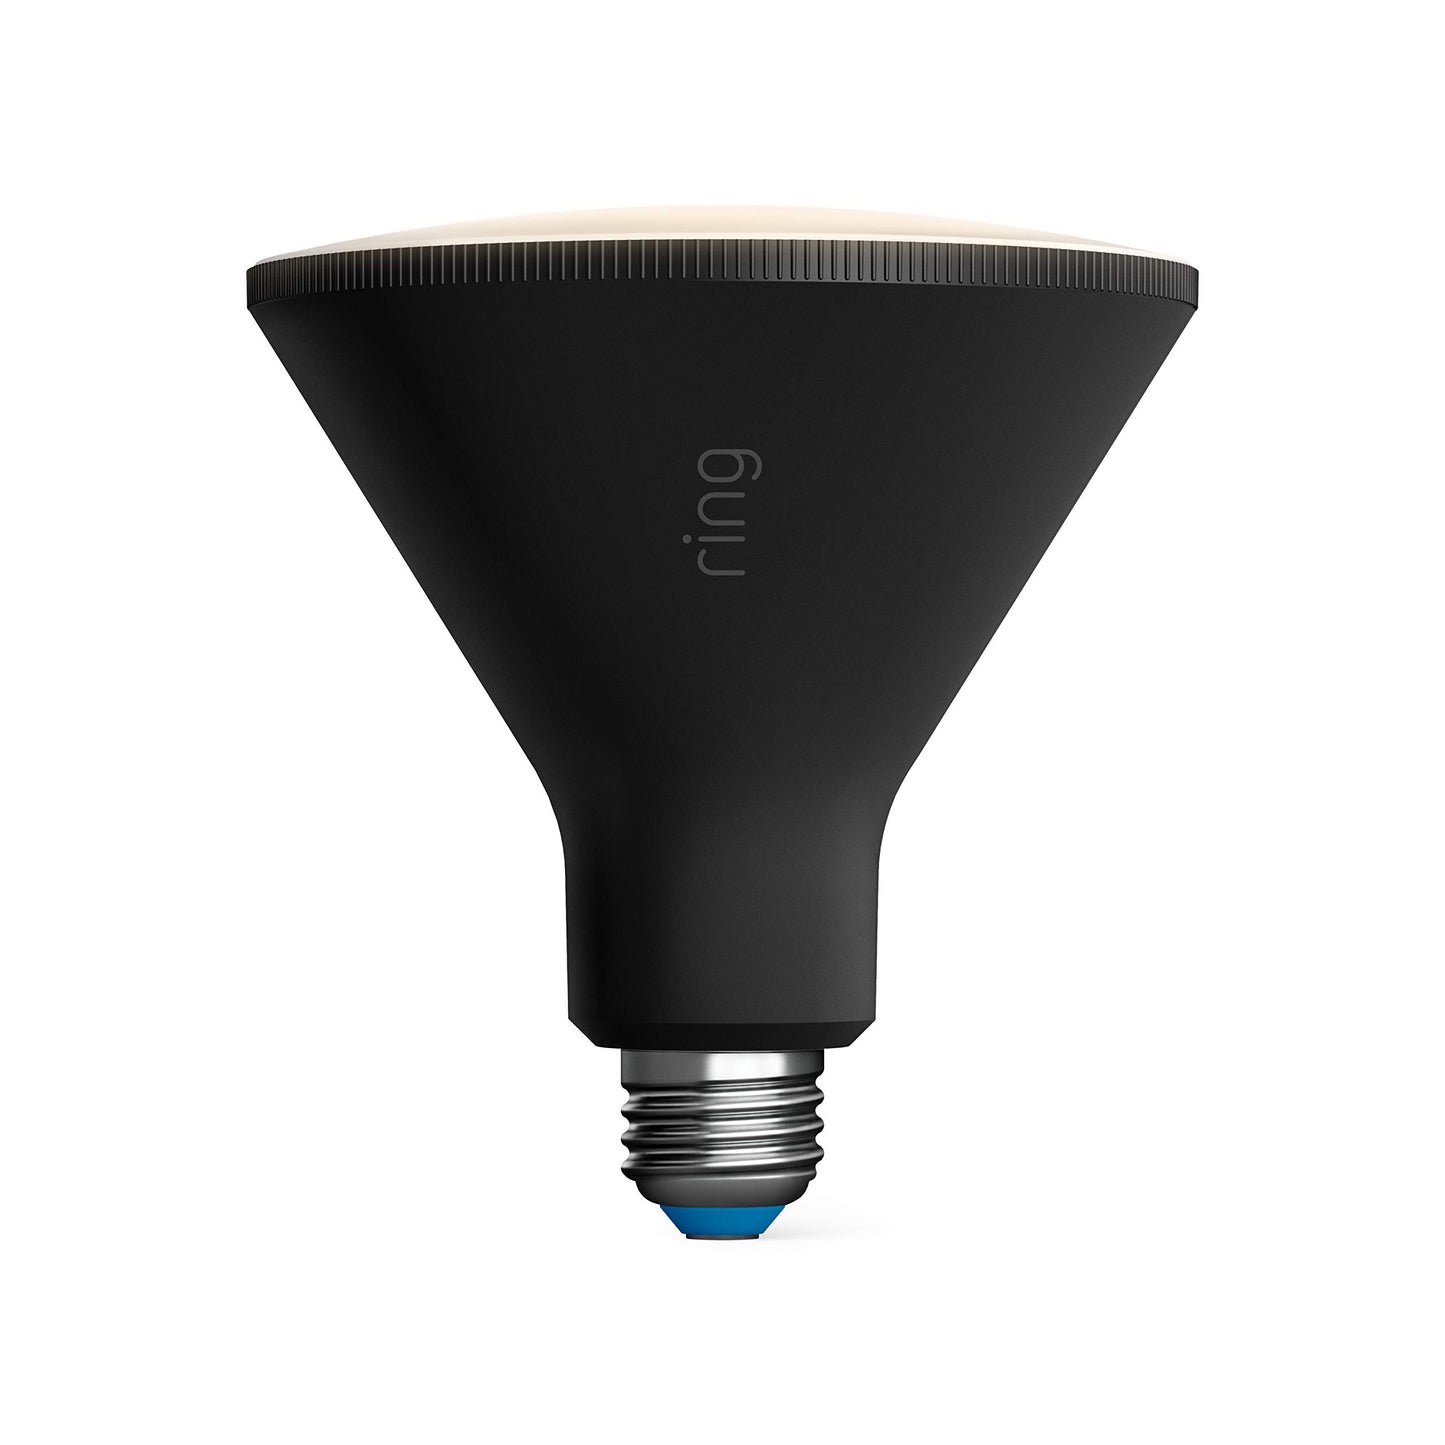 Ring PAR38 Smart LED Bulb, Black (Starter Kit: 2-pack)